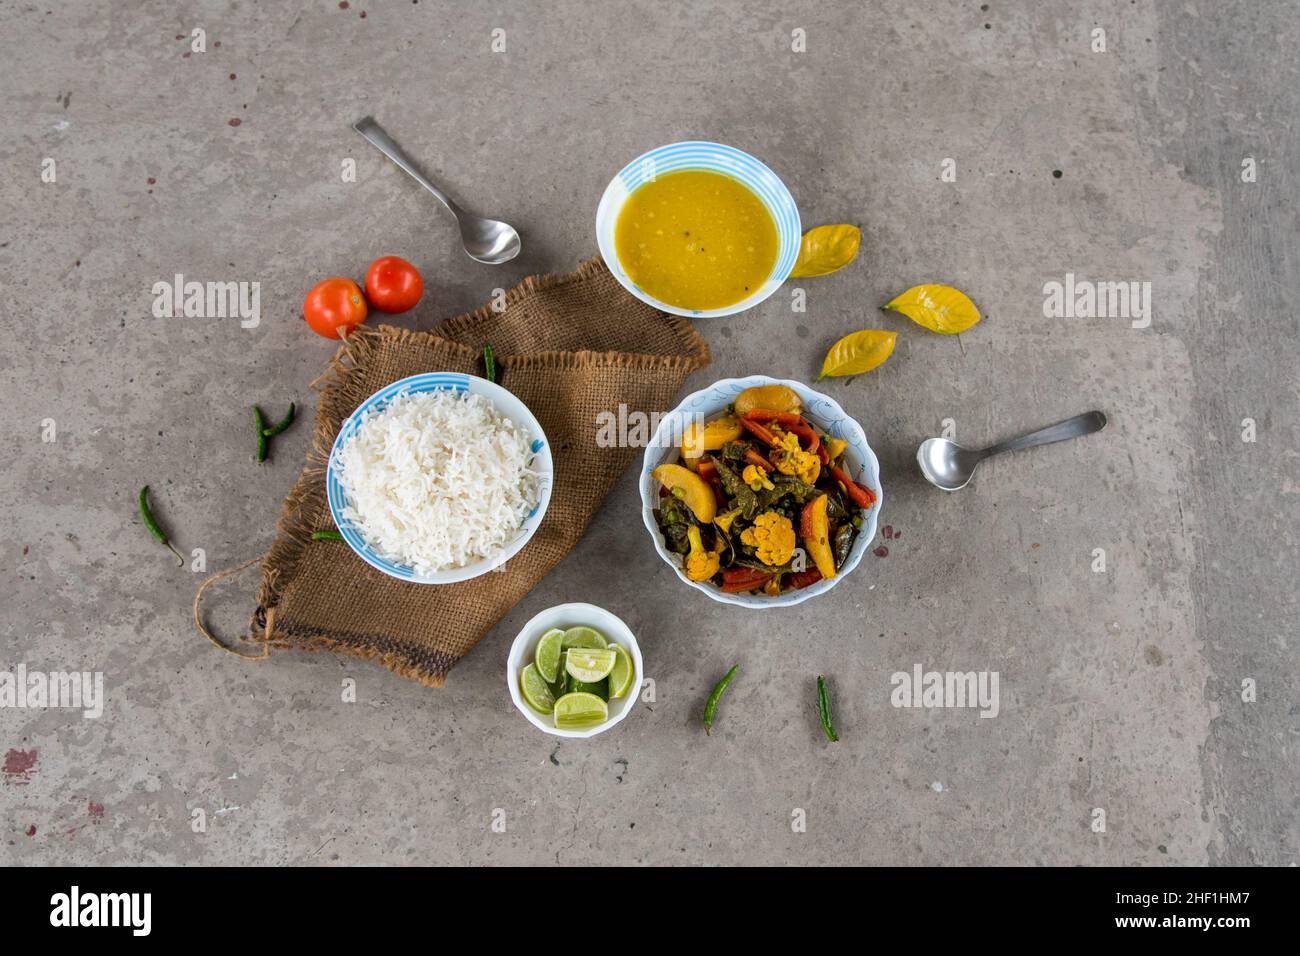 Indisches Mittagsmenü gemischtes Gemüse, gedämpfter Reis und gelbes Dal oder Hülsenfrüchte, serviert in Schüsseln zusammen mit Gewürzen. Draufsicht. Stockfoto